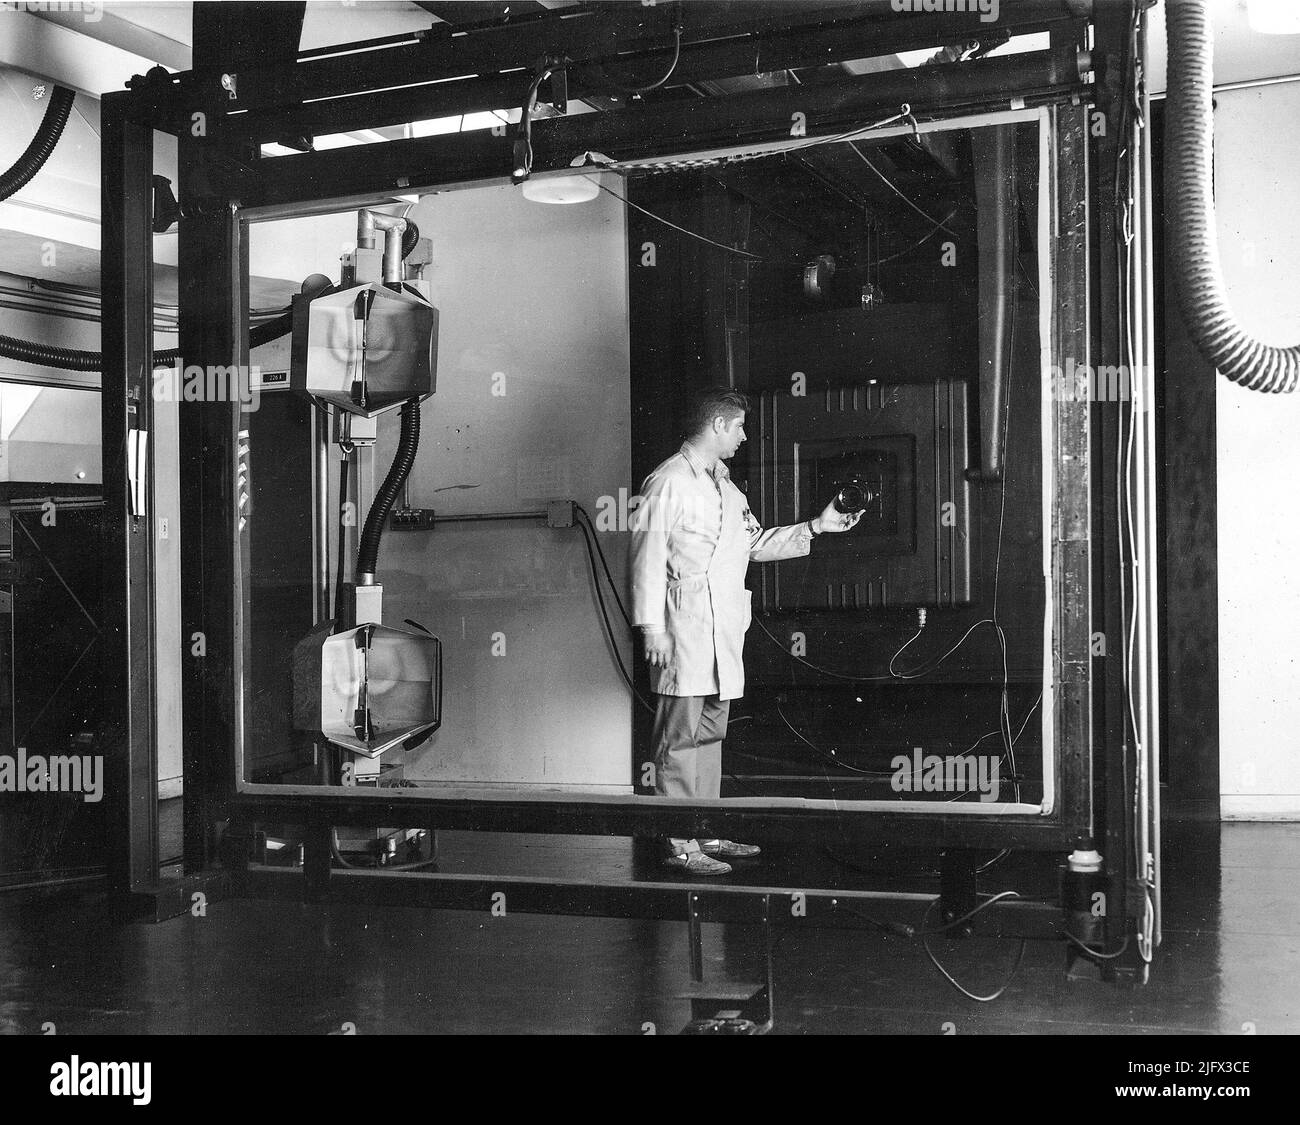 Historisches Bild. KOPIERKAMERA FÜR GEOLOGISCHE Untersuchungen IN DEN USA. Jay Prendergast vom USGS passt das Objektiv an einer Robertson 48-Zoll-, 4,5-Tonnen-Kamera an. Die im Jahr 1959 installierte Kamera wurde für die präzise Skalierung von Mapping-Einzelteilen und -Verbundwerkstoffen eingesetzt. Dieses Foto wurde 1965 im Menlo Park, Kalifornien, aufgenommen. Kredit: USGS. Stockfoto